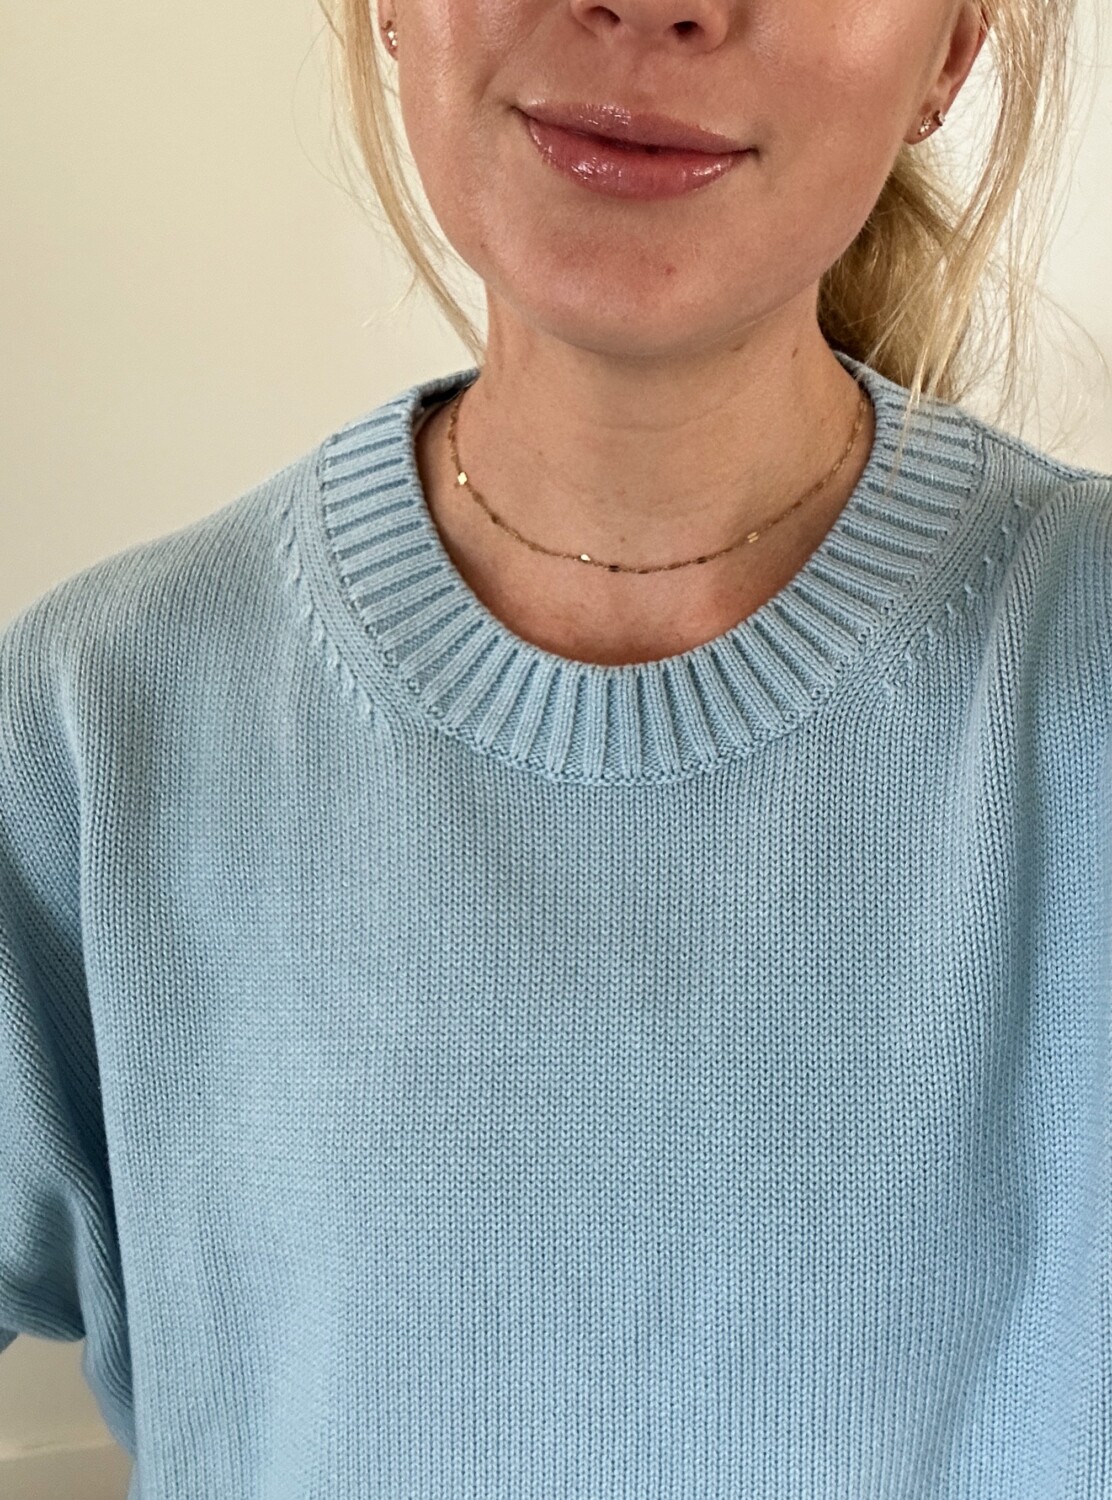 Ruth Nuss wearing a light blue sweater